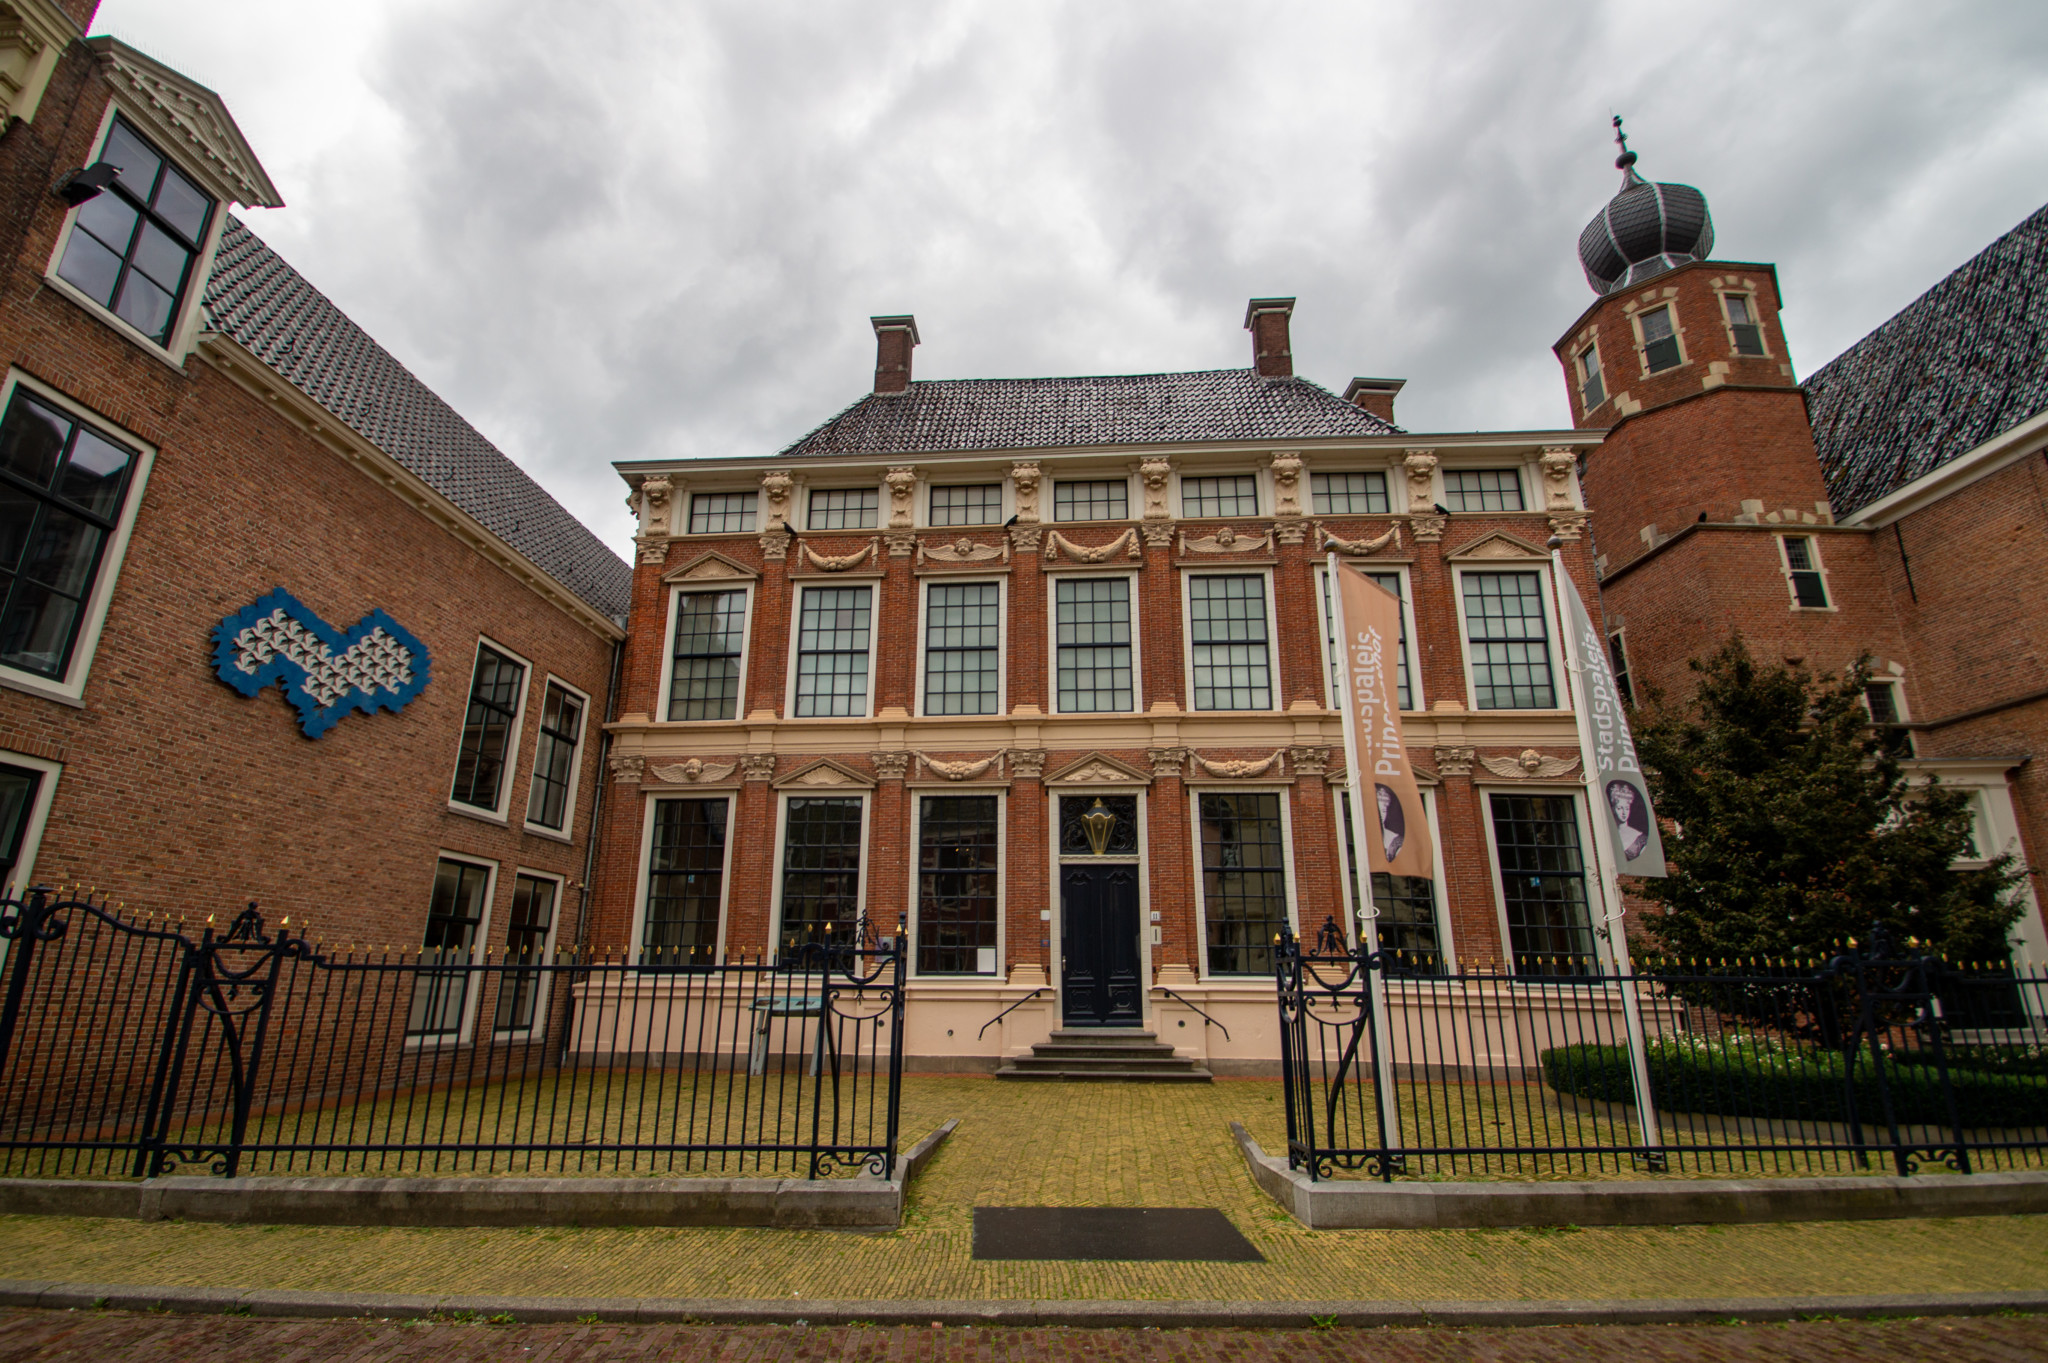 Das Keramykmuseum in Leeuwarden